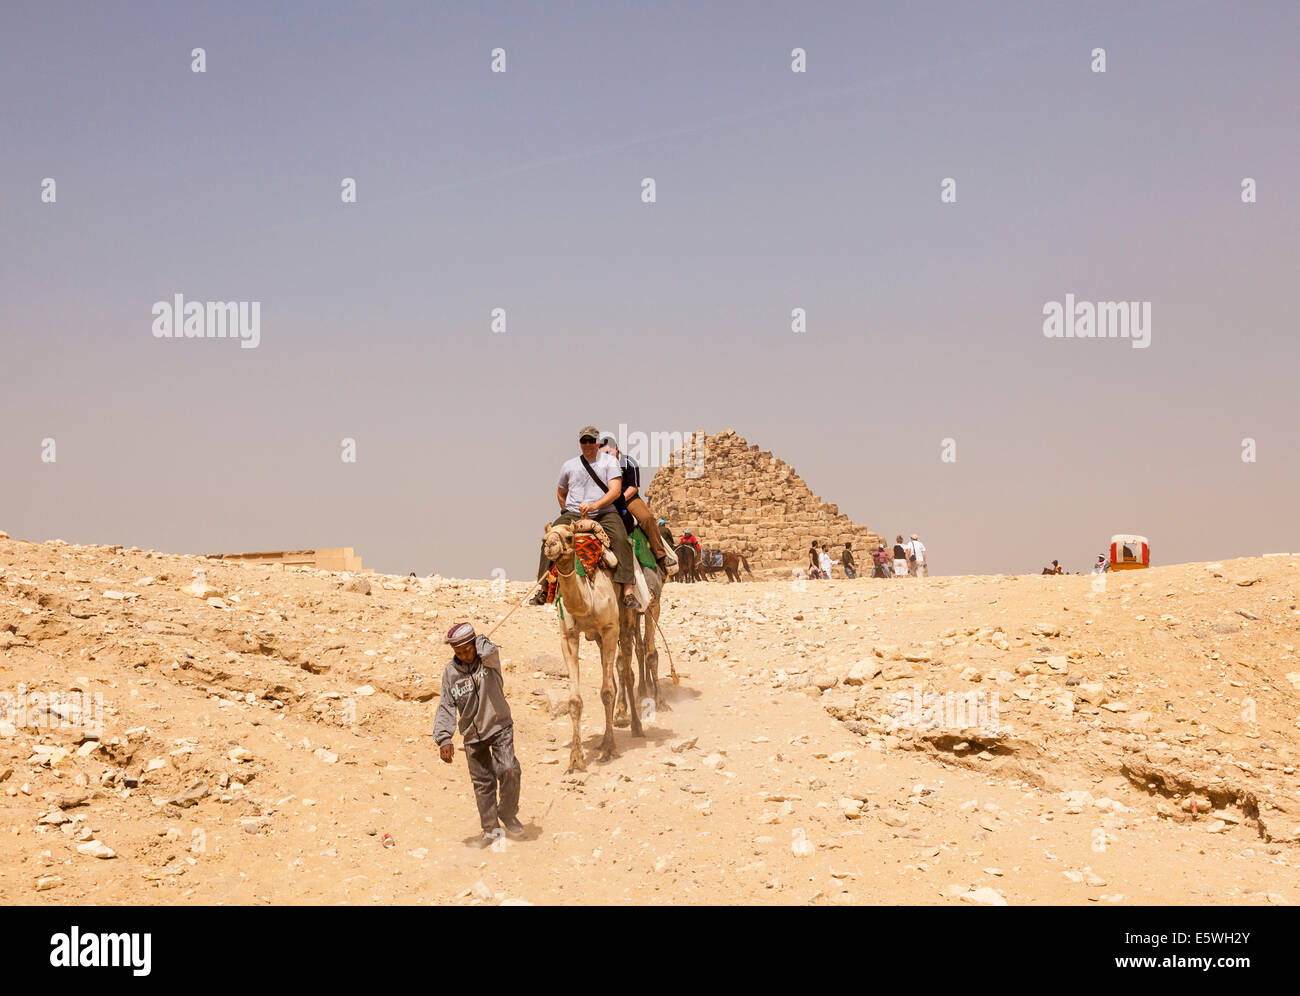 Pyramiden, Ägypten - Touristen ein Kamel reiten, durch die große Pyramide von Gizeh in Kairo, Ägypten Stockfoto